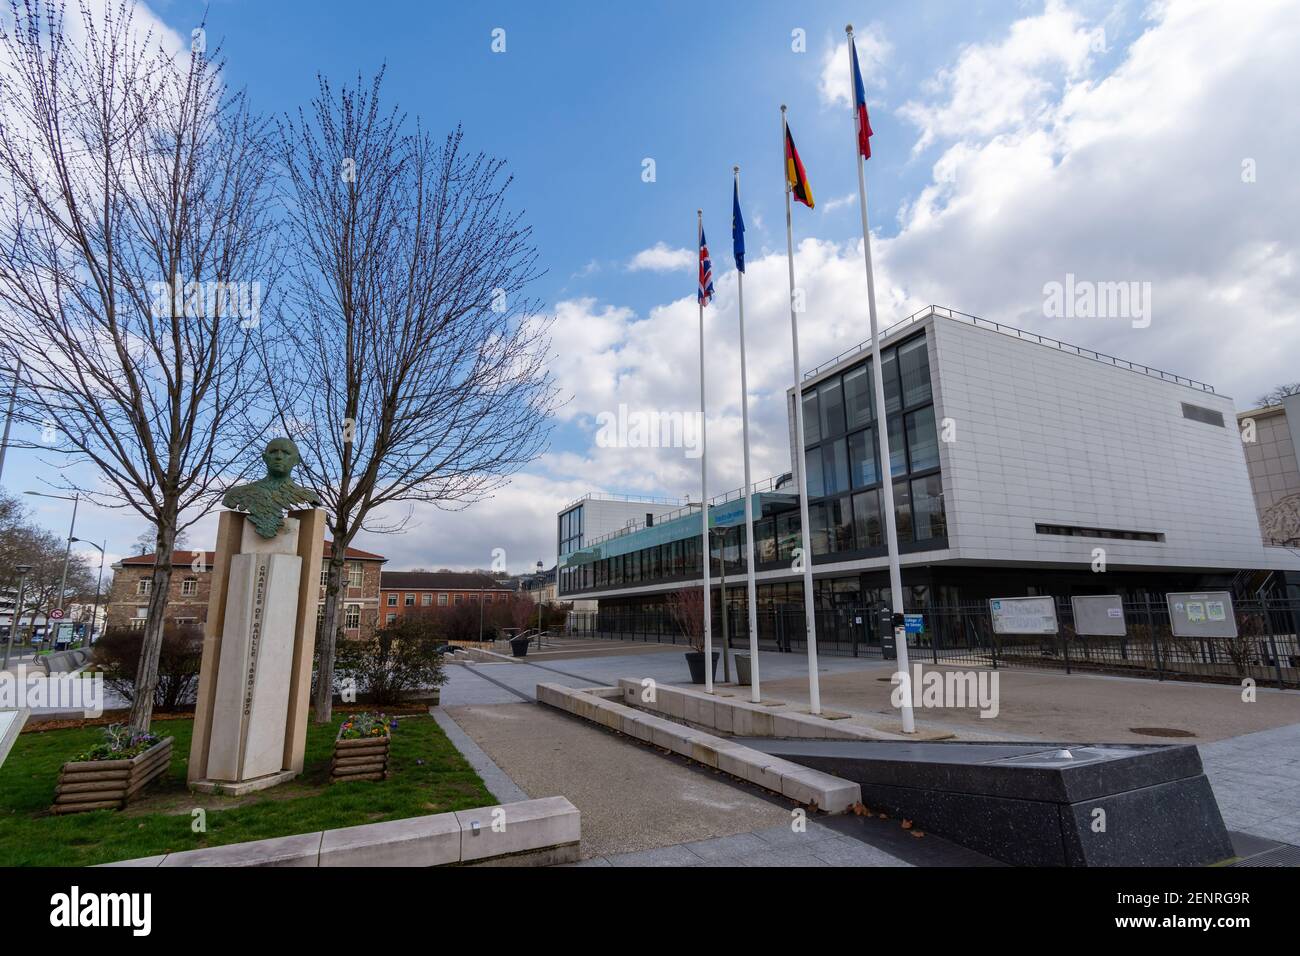 Sèvres, France - 26 février 2021 : vue sur la place Charles de Gaulle avec le buste de Charles de Gaulle et le collège de Sèvres (international s Banque D'Images